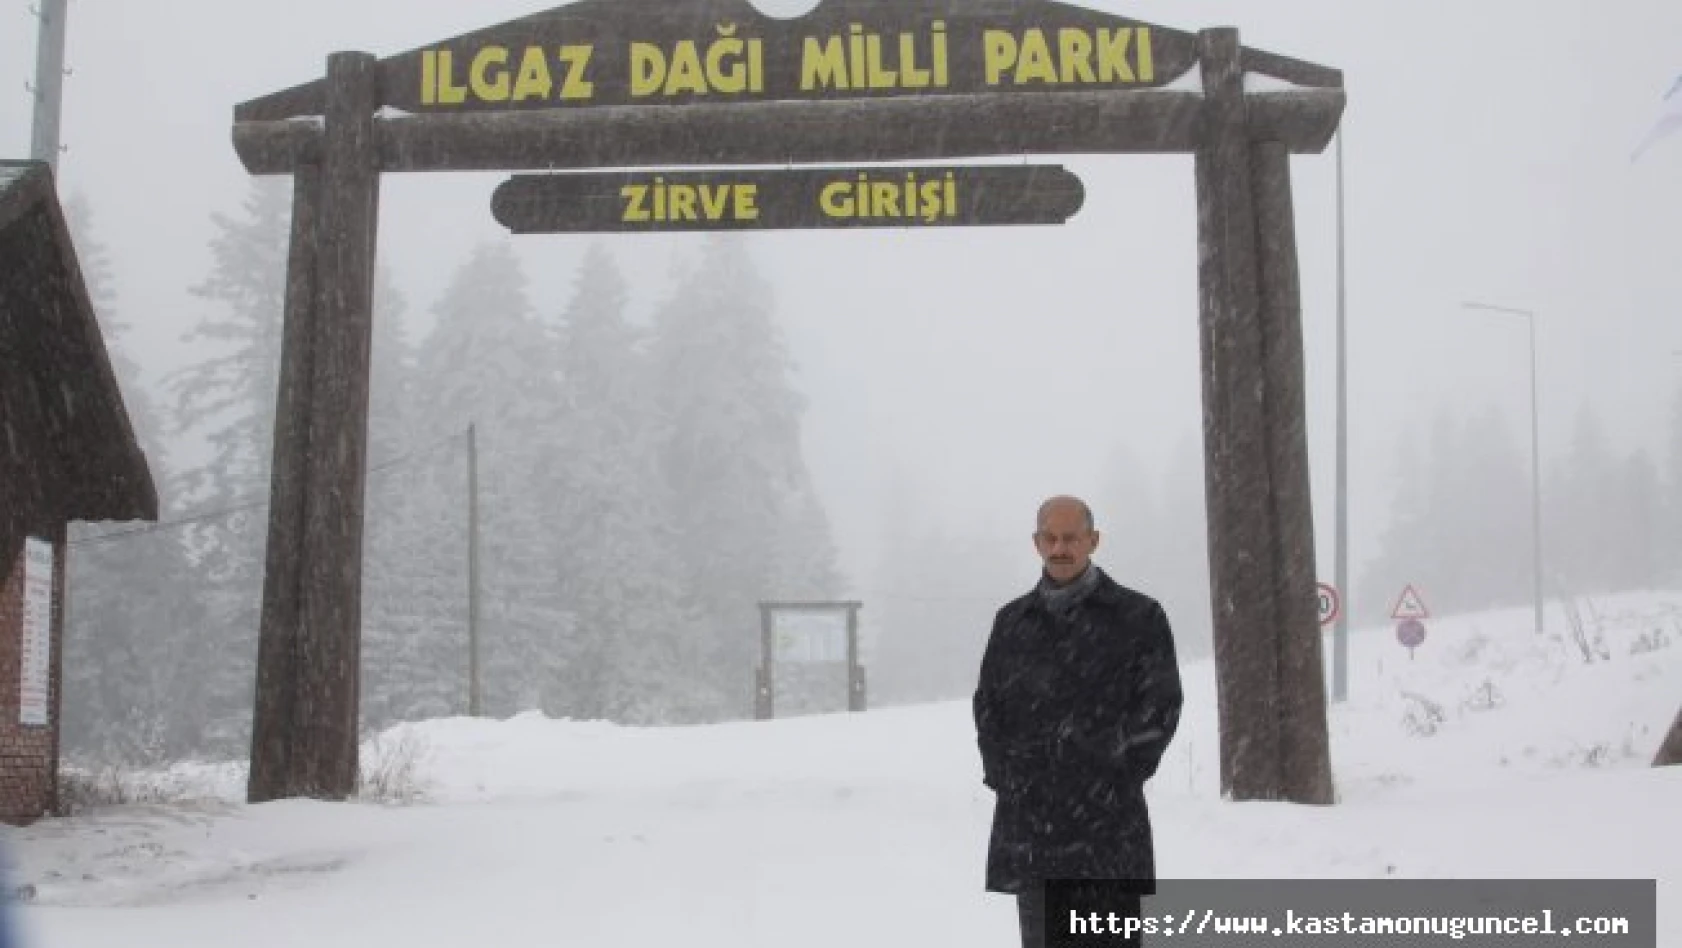 Ilgaz Dağı kış turizmine hazır